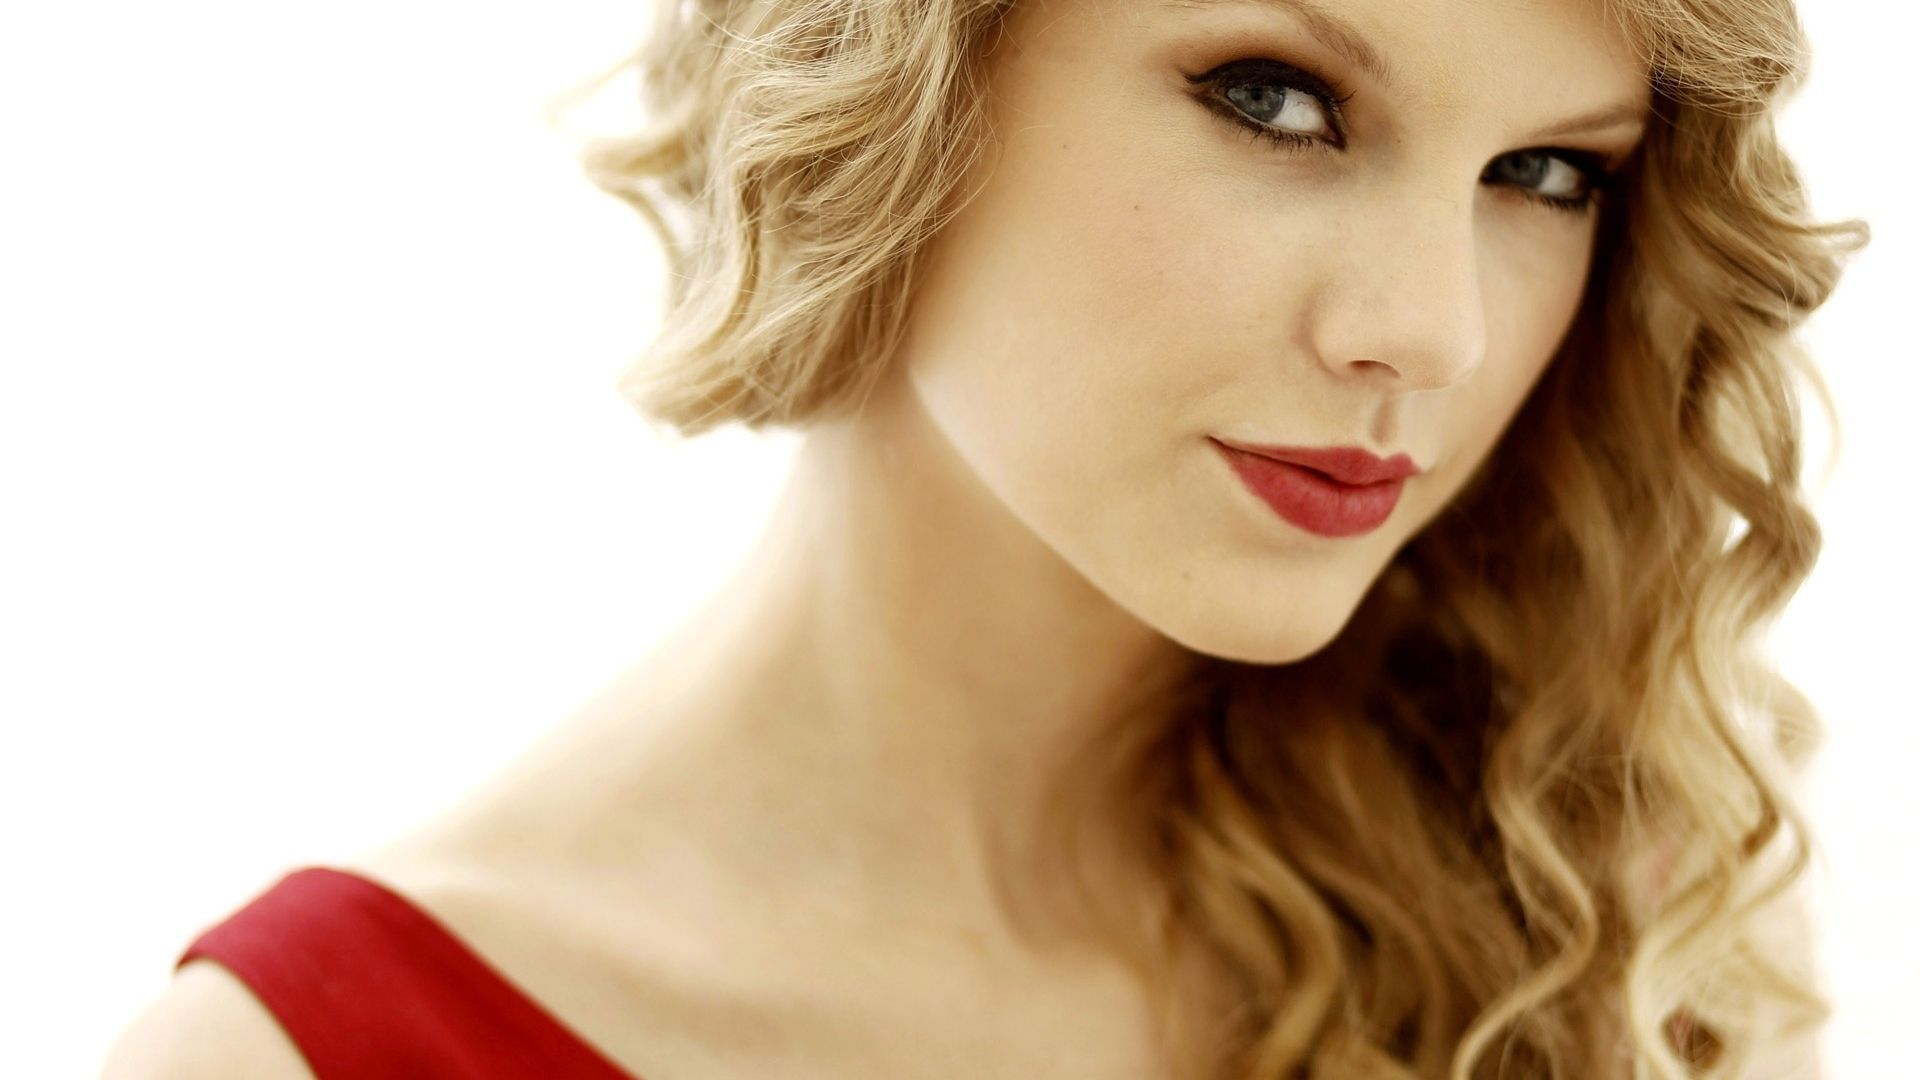 Taylor swift - Taylor Swift Wallpaper 21470449 - Fanpop